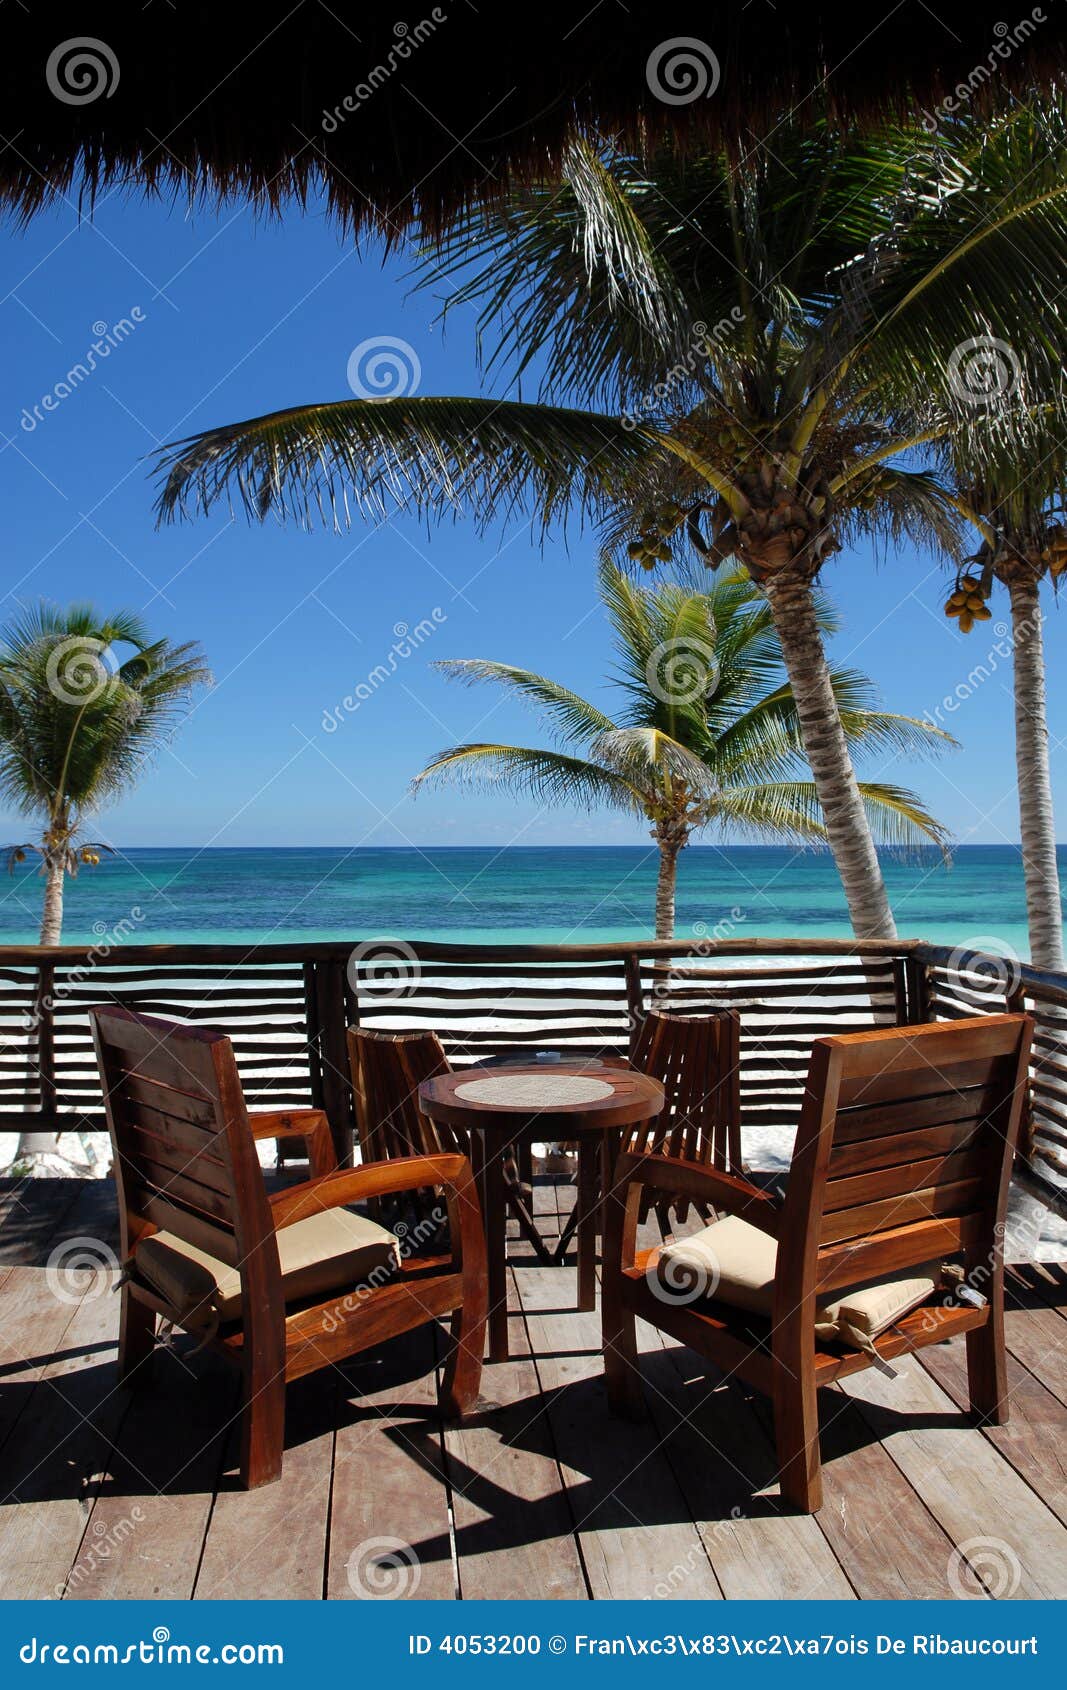 deck overlooking beach